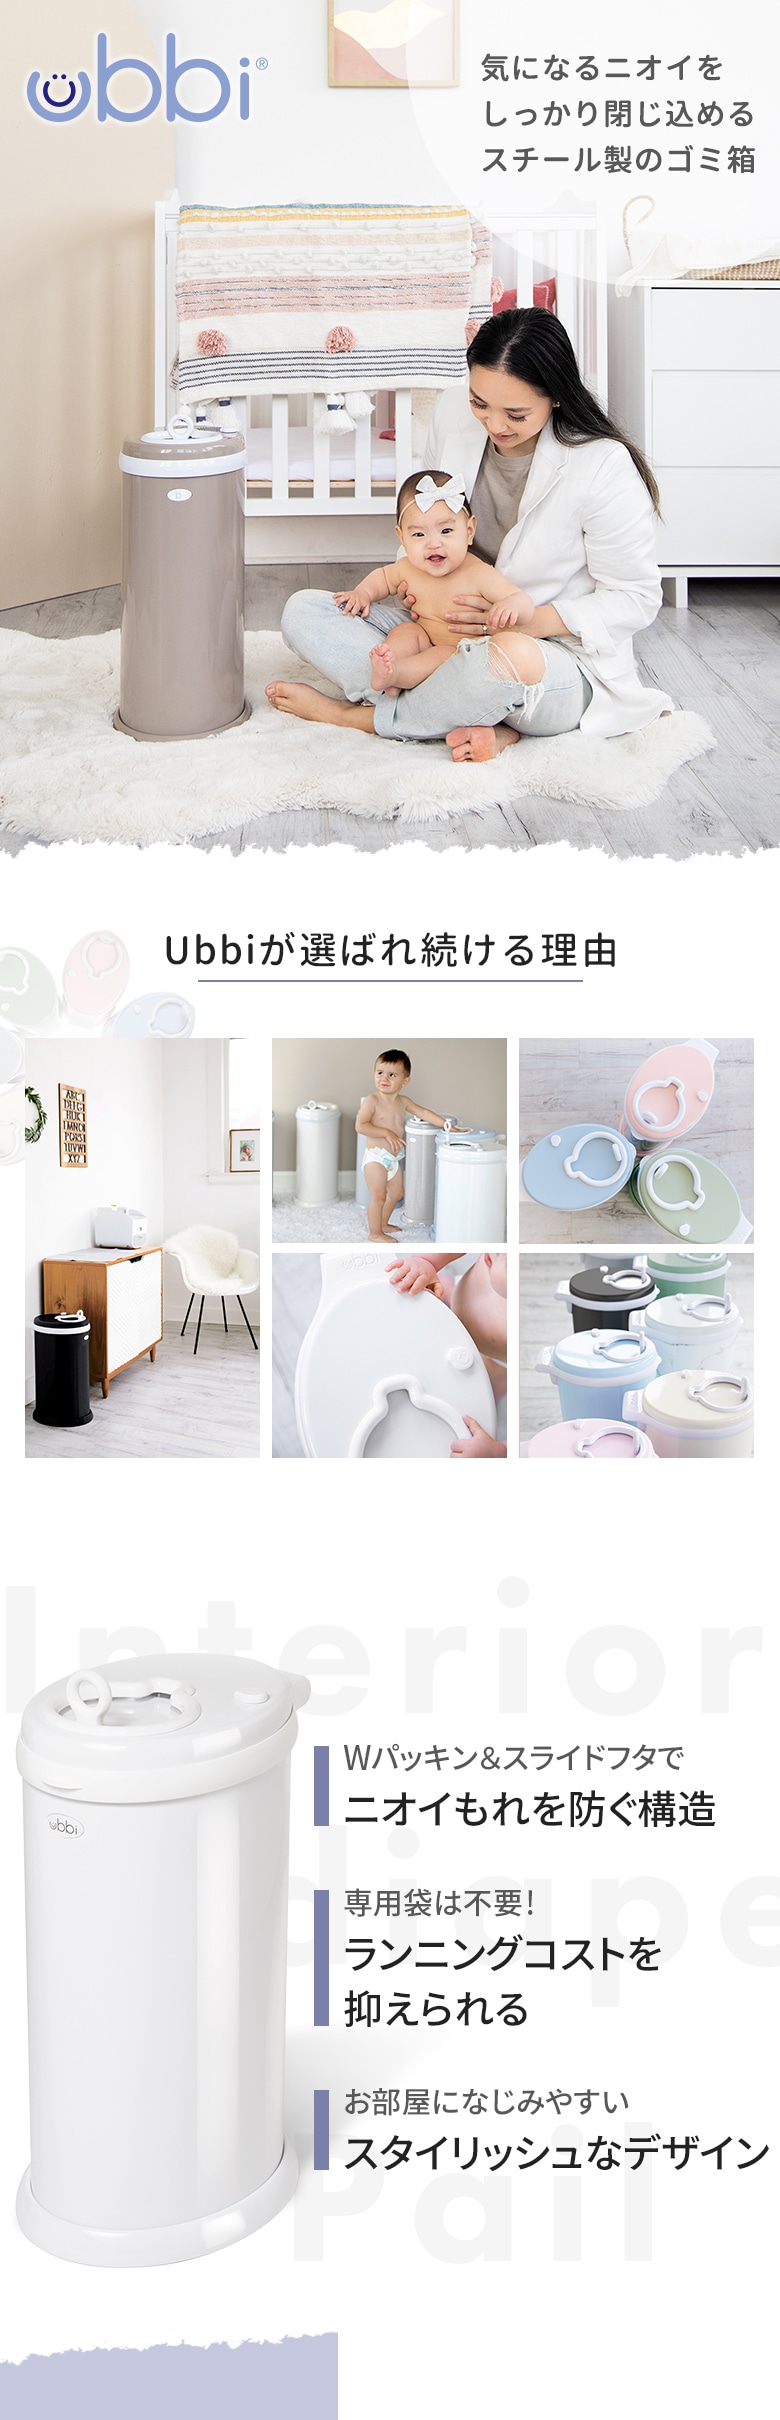 日本育児 ubbi インテリアオムツペール-日本育児公式オンラインショップ eBaby-Select